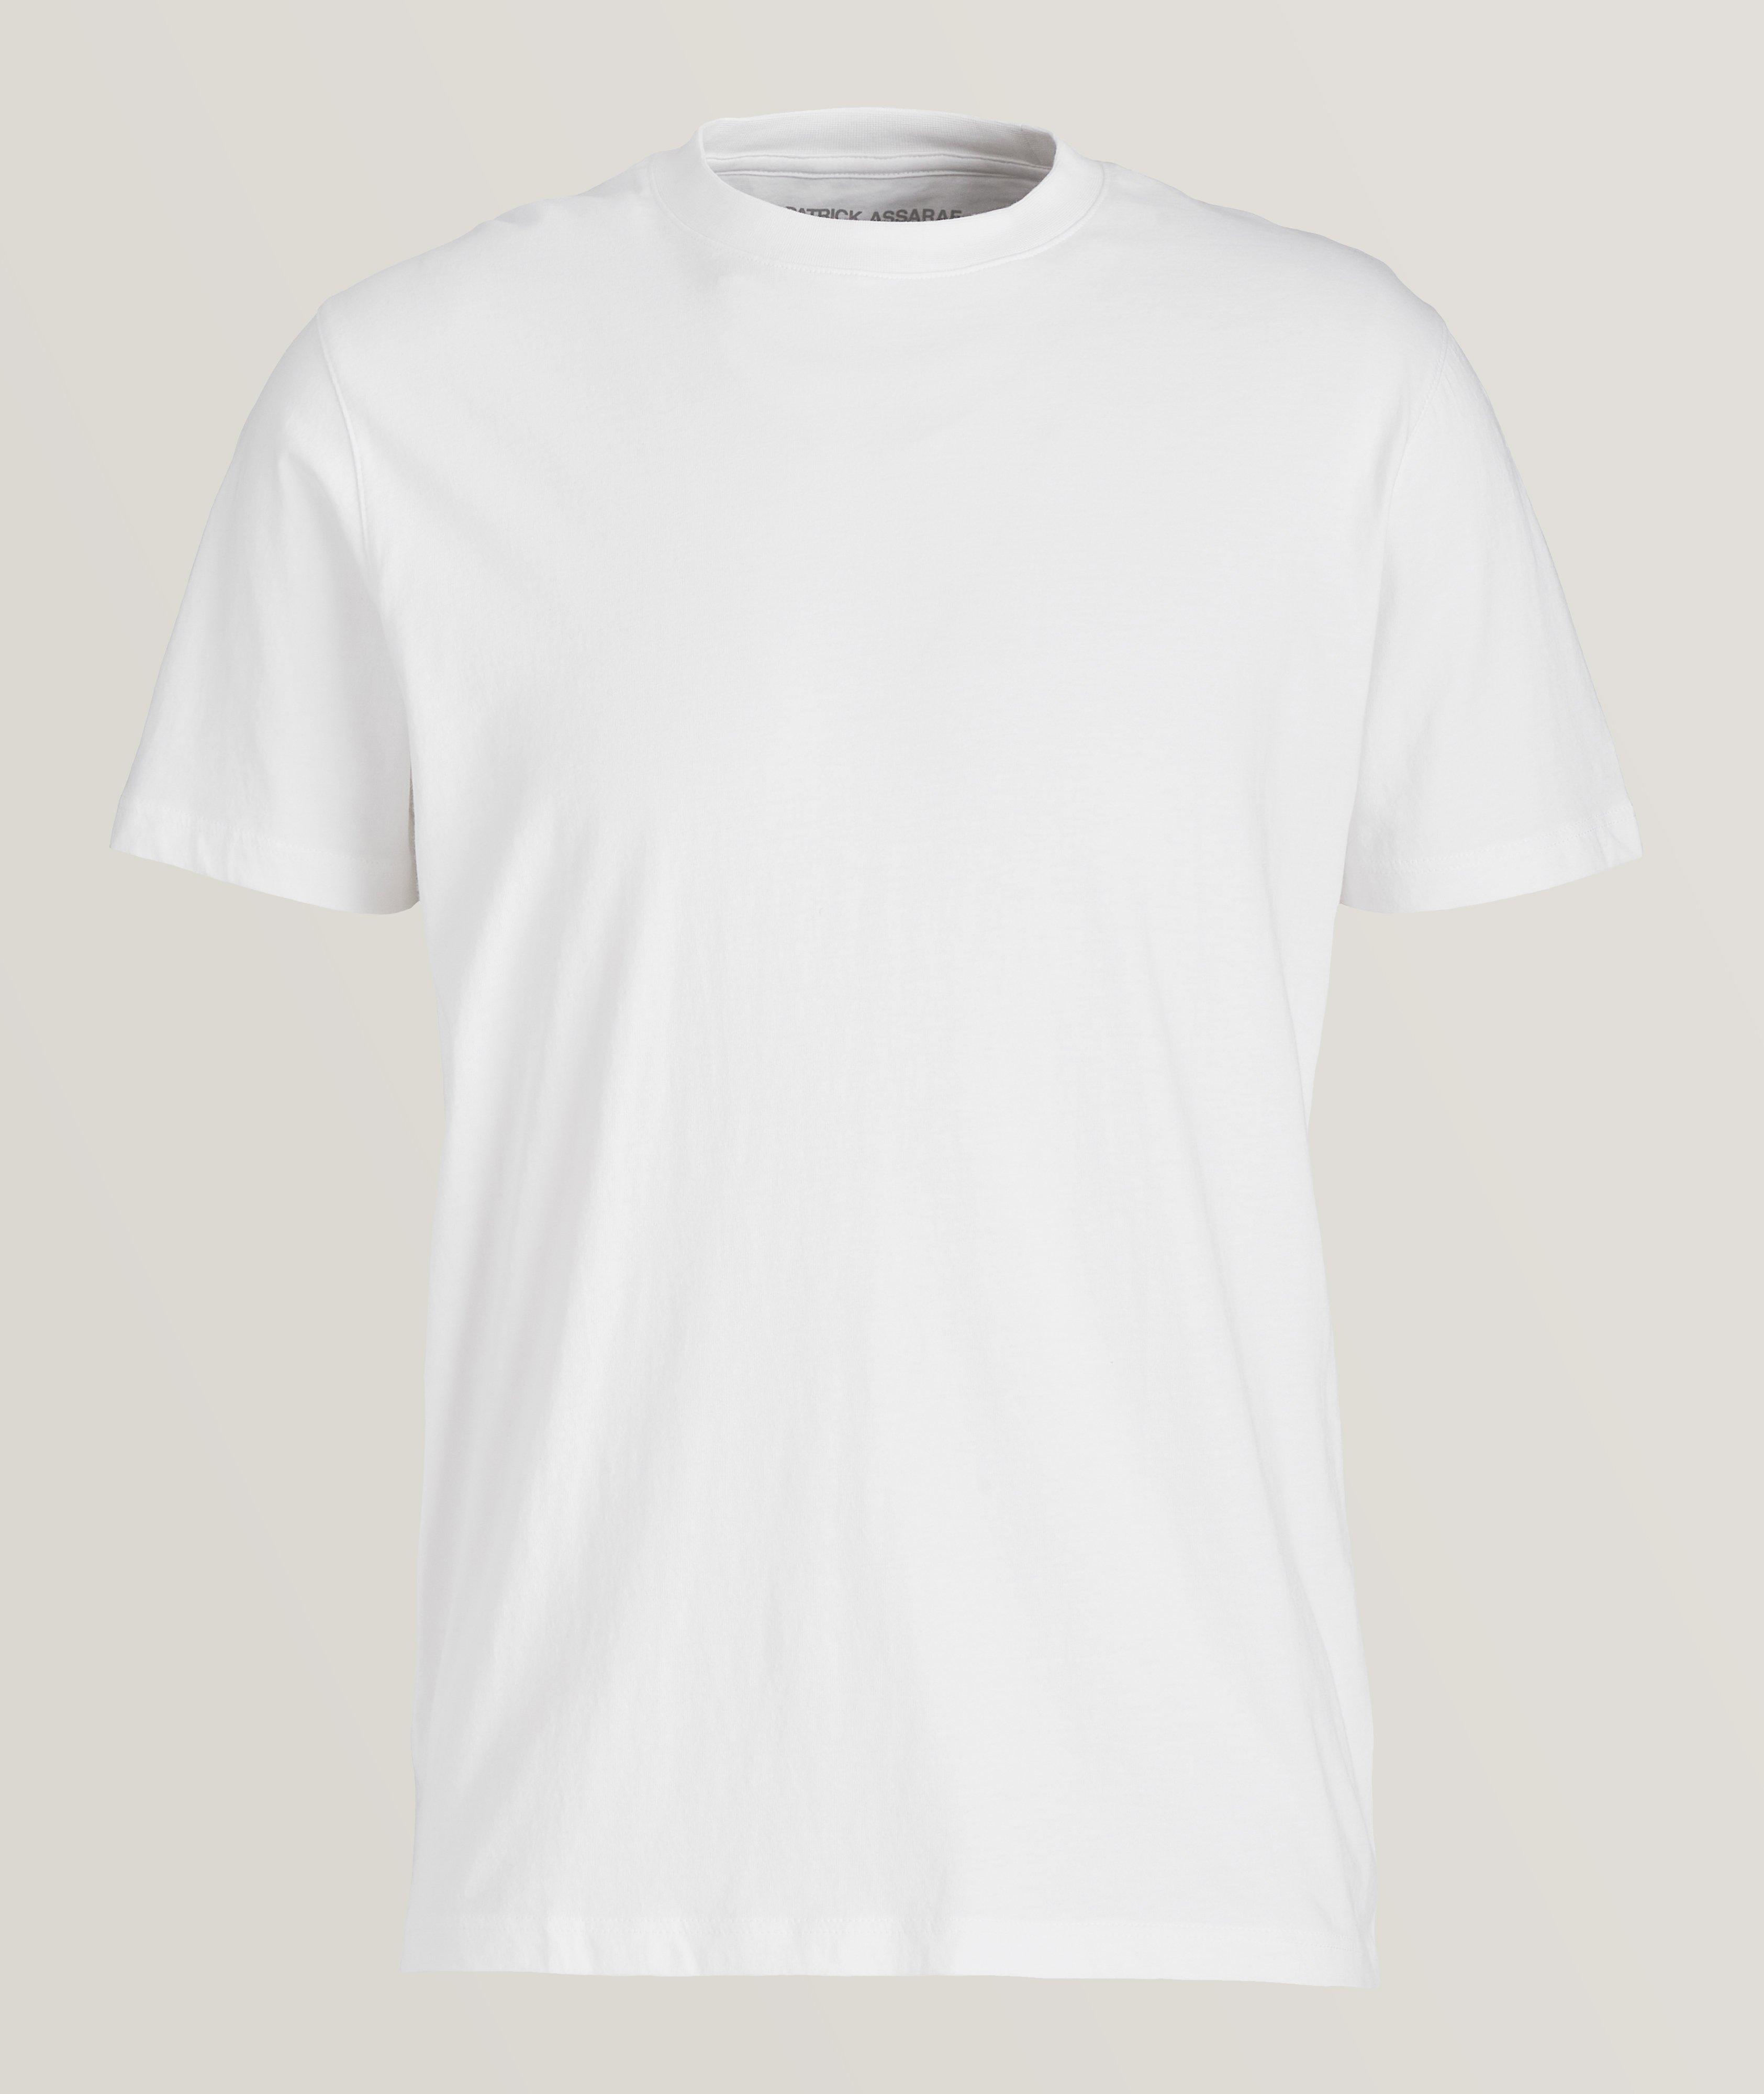 Patrick Assaraf T-shirt en coton biologique à encolure ronde